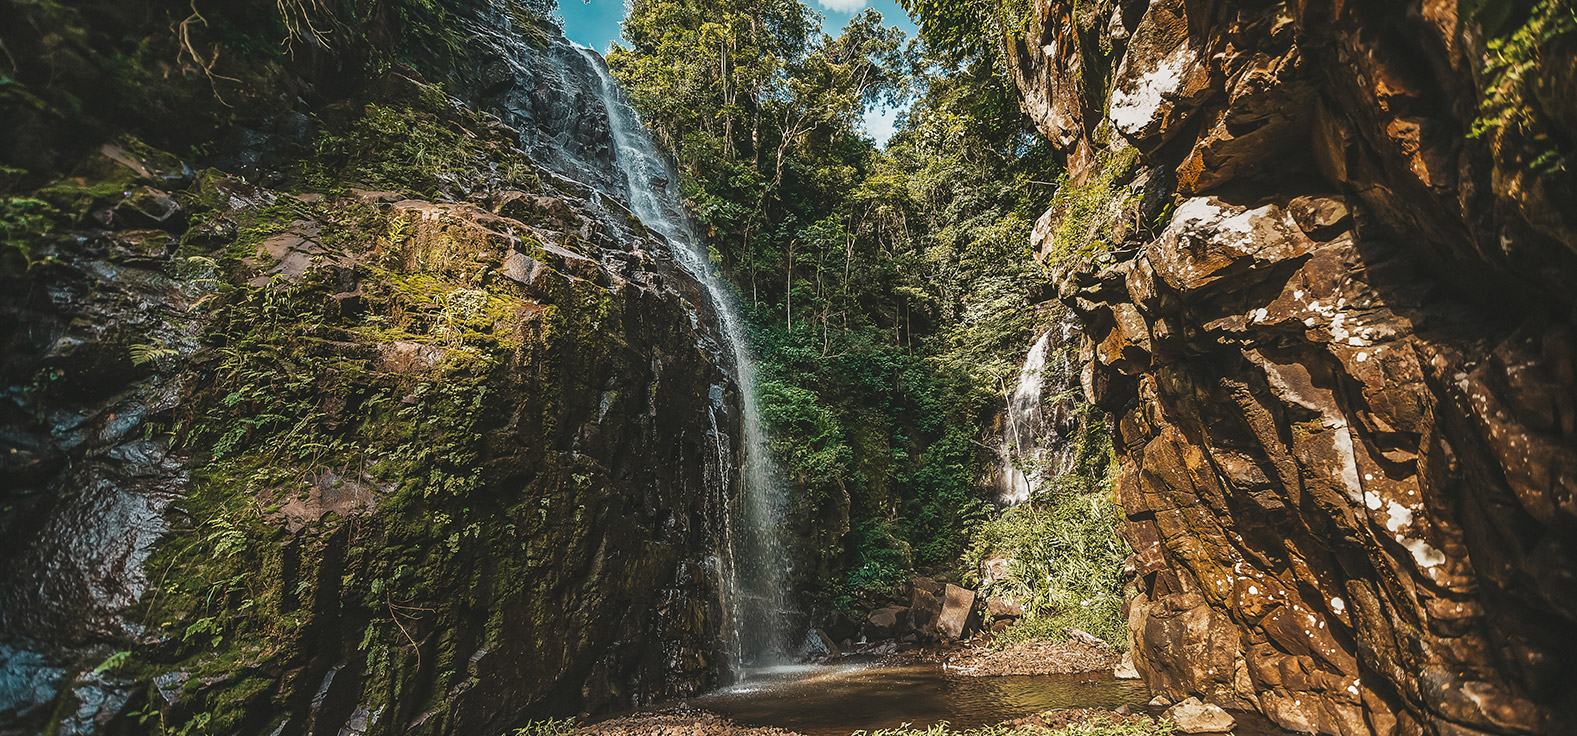 Cachoeira do Bissoli em Torrinha | Portal Serra do Itaquerí